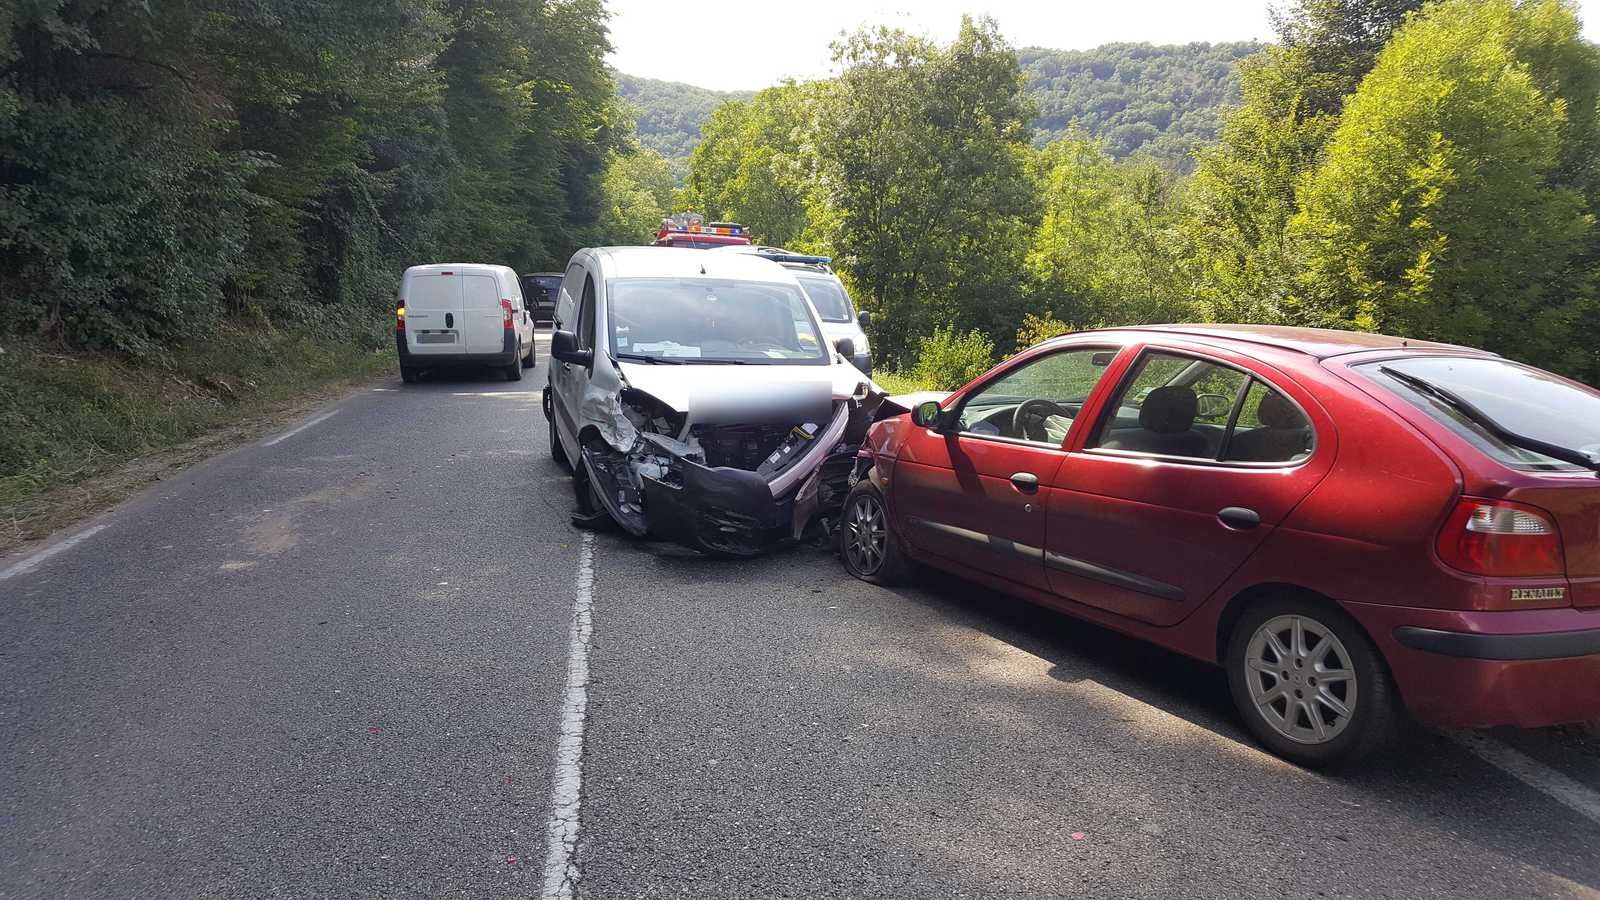 Castelfranc (46) - Accident de ciruclation, 3 véhicules impliqués